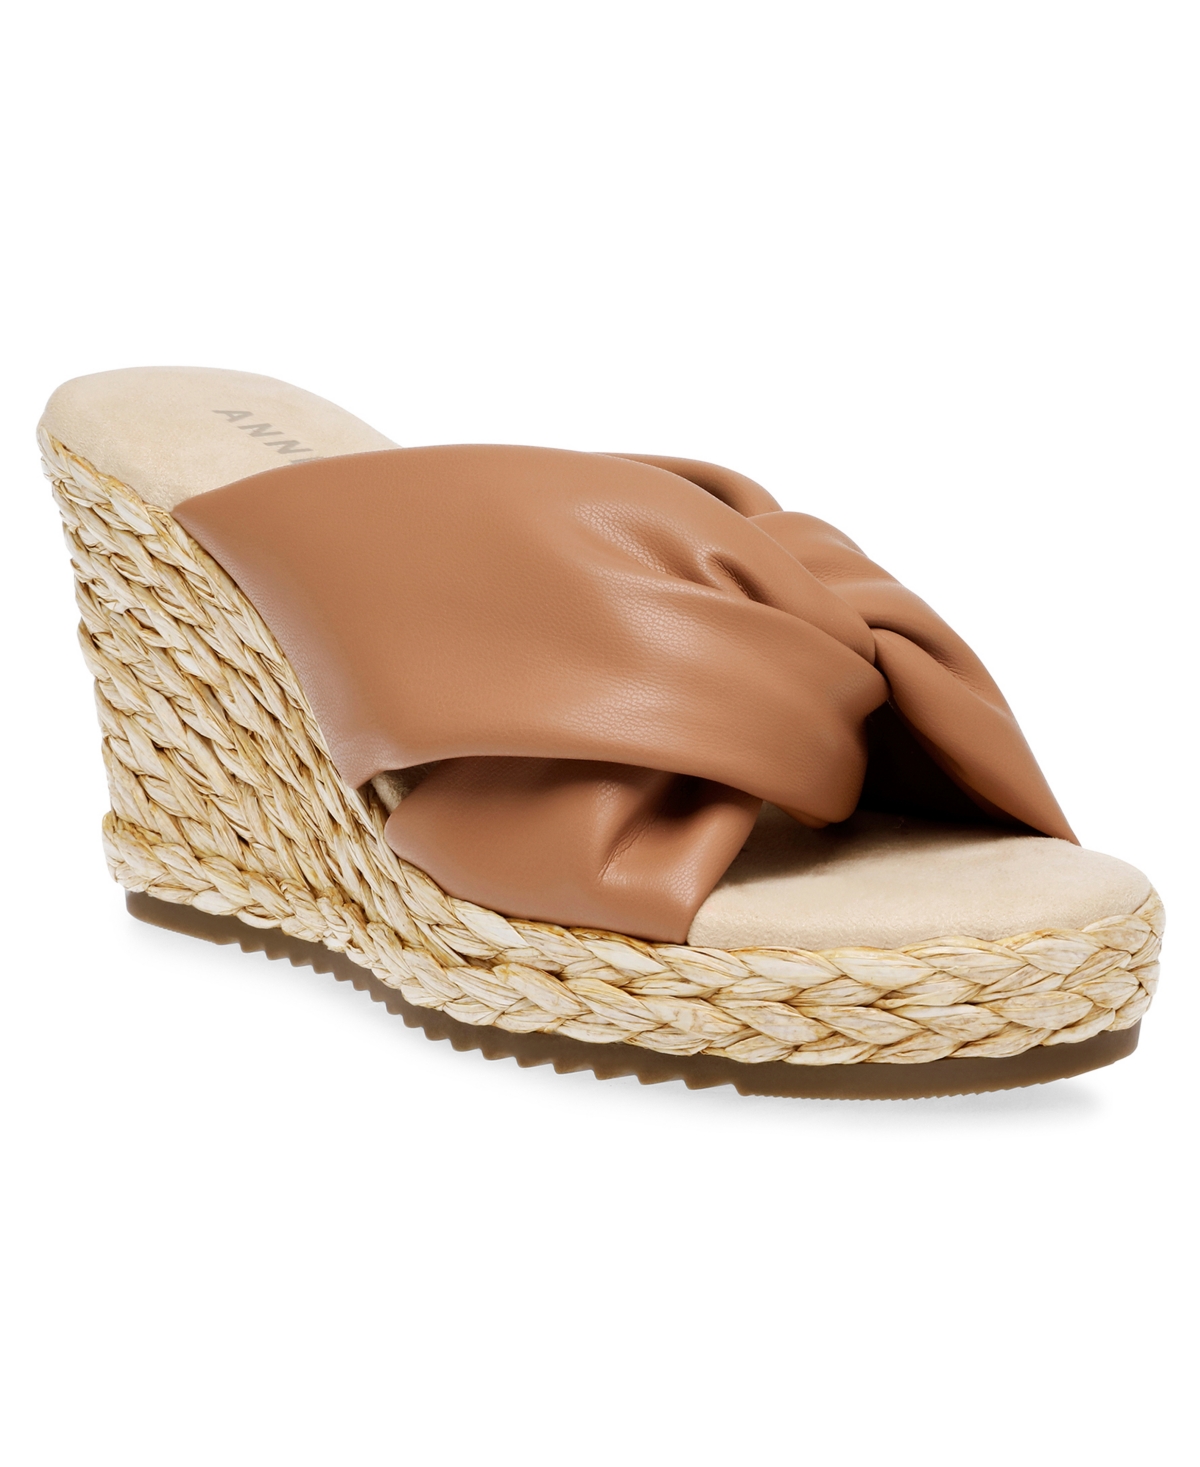 Anne Klein Women's Weslie Espadrille Wedge Sandals In Tan Smooth